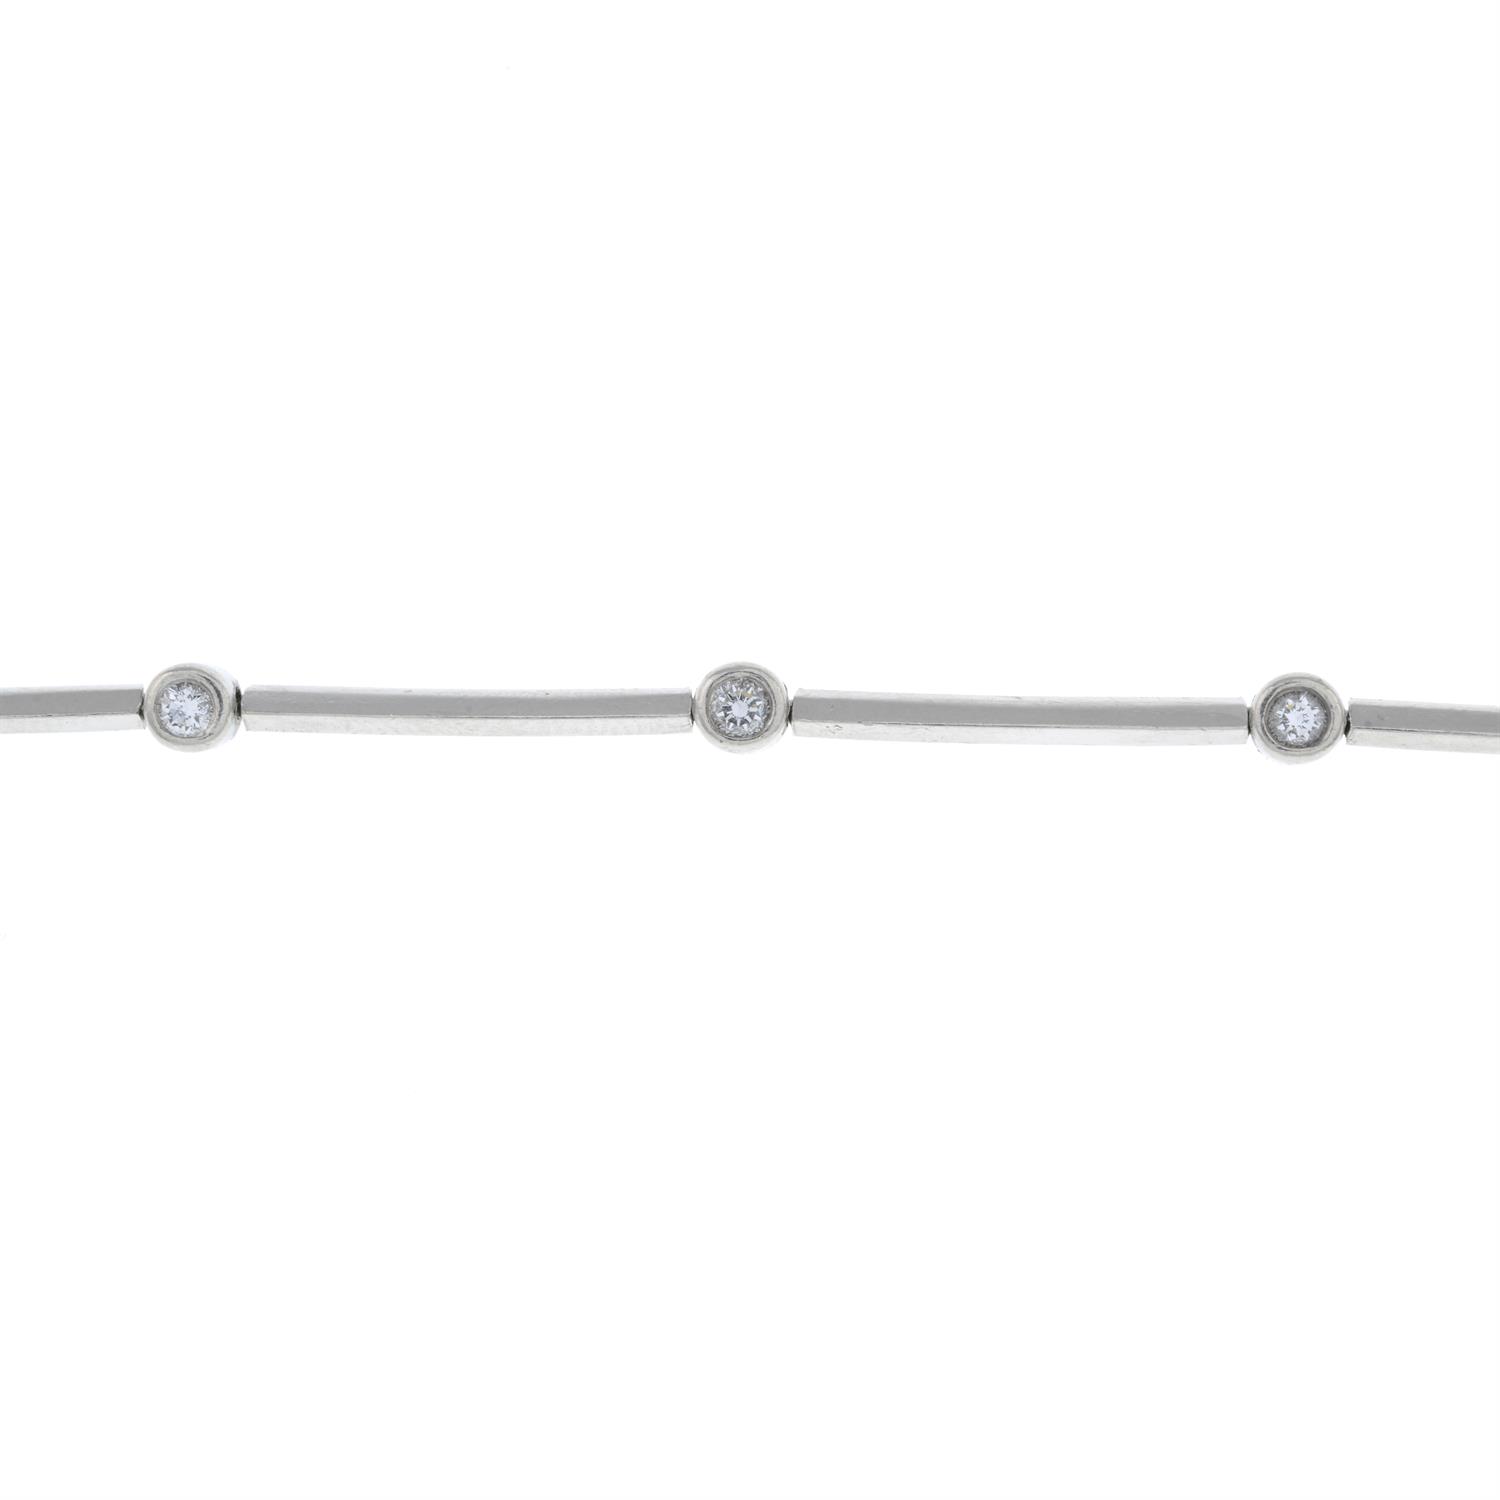 Diamond bracelet, by Tiffany & Co. - Image 2 of 4